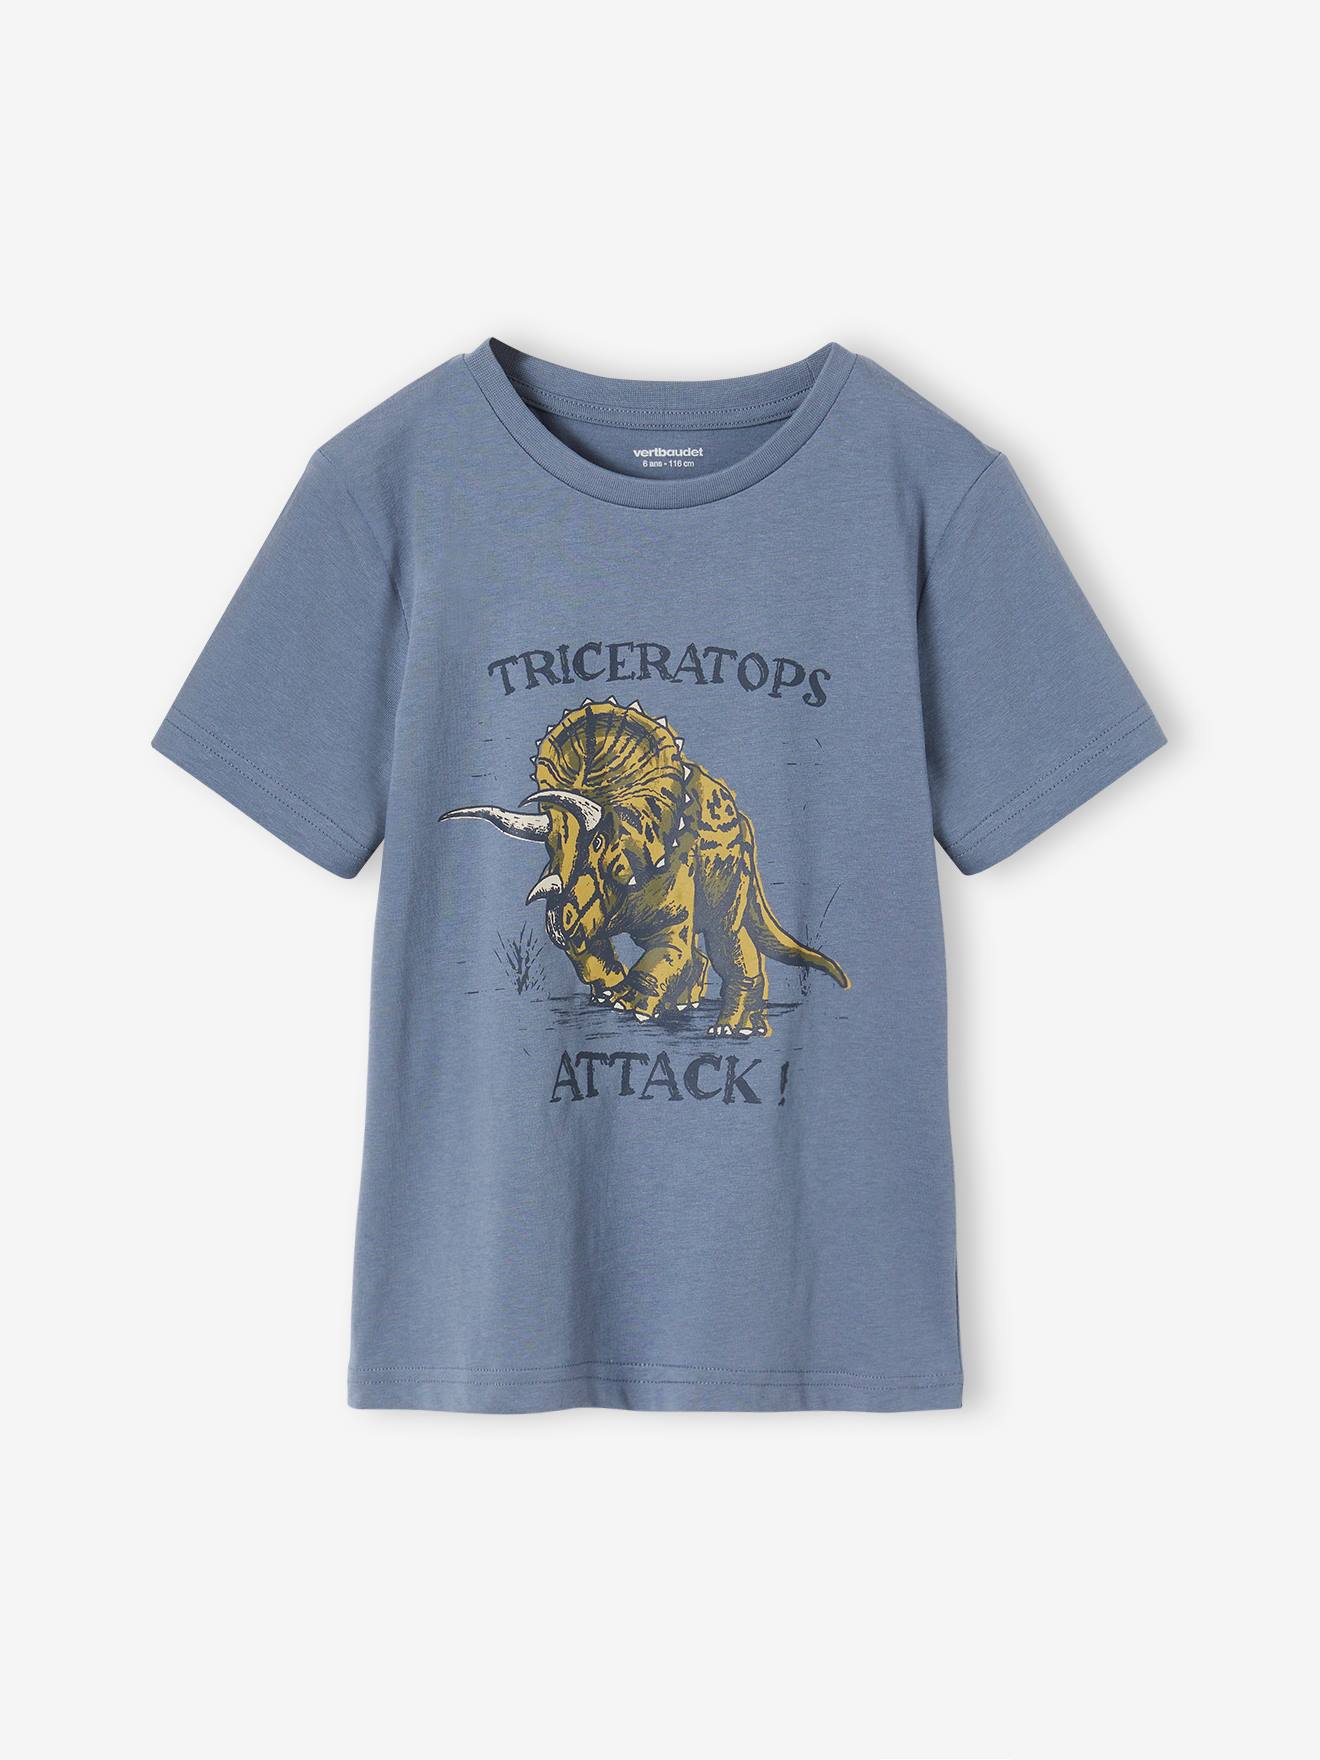 VERTBAUDET Camiseta con motivo dinosaurio, para niño azul grisáceo